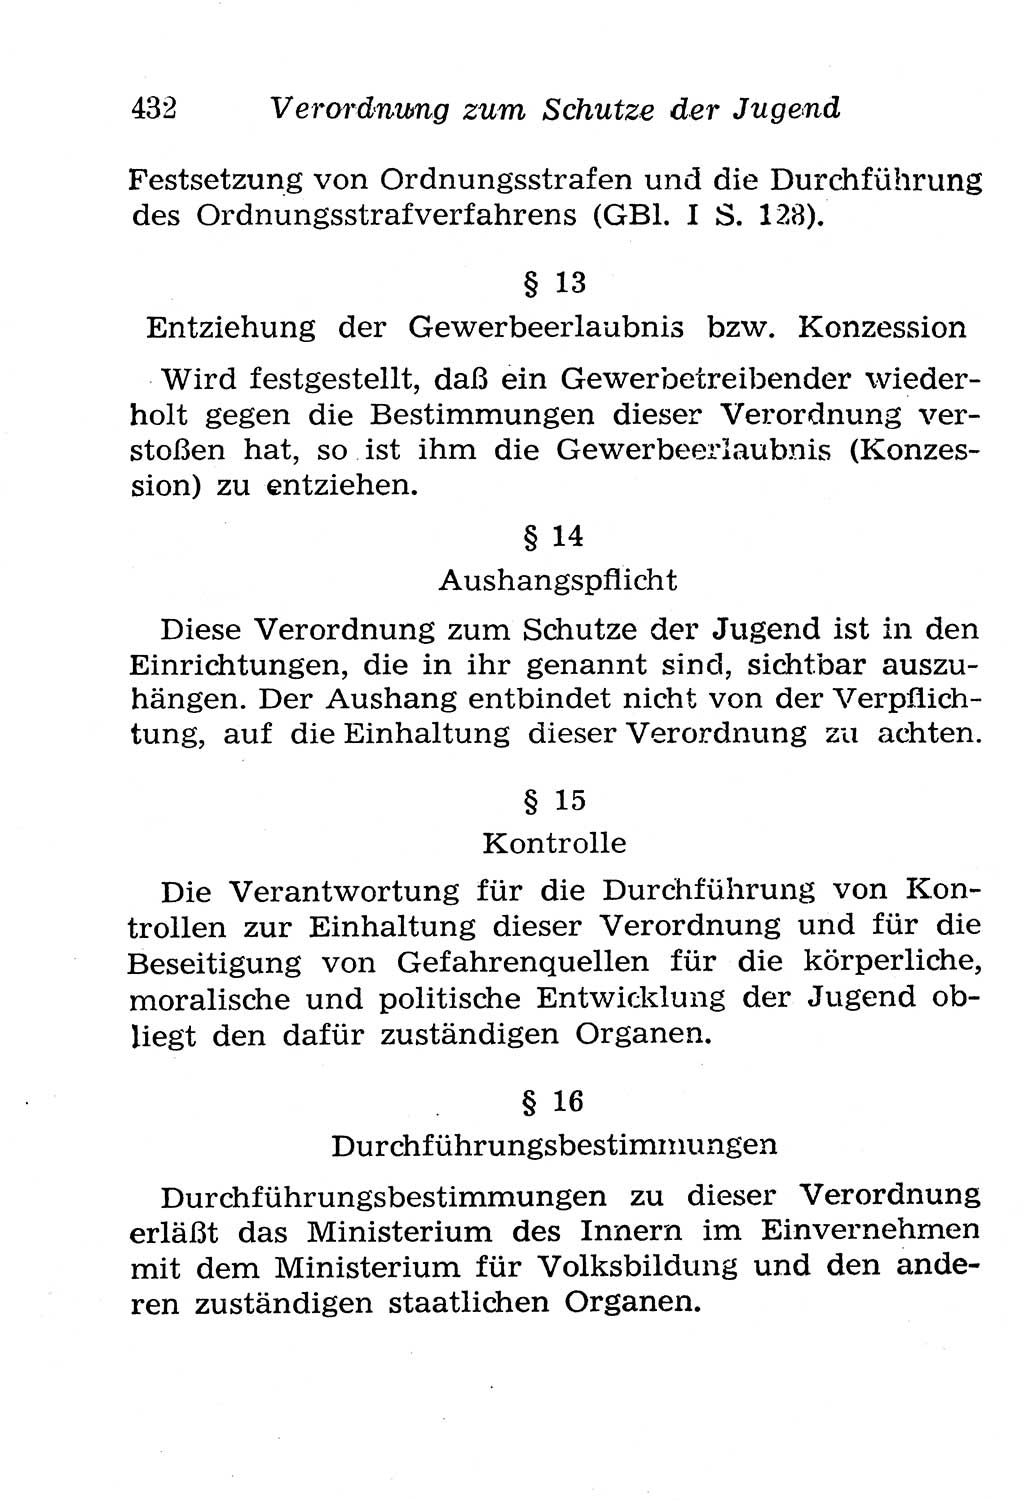 Strafgesetzbuch (StGB) und andere Strafgesetze [Deutsche Demokratische Republik (DDR)] 1958, Seite 432 (StGB Strafges. DDR 1958, S. 432)